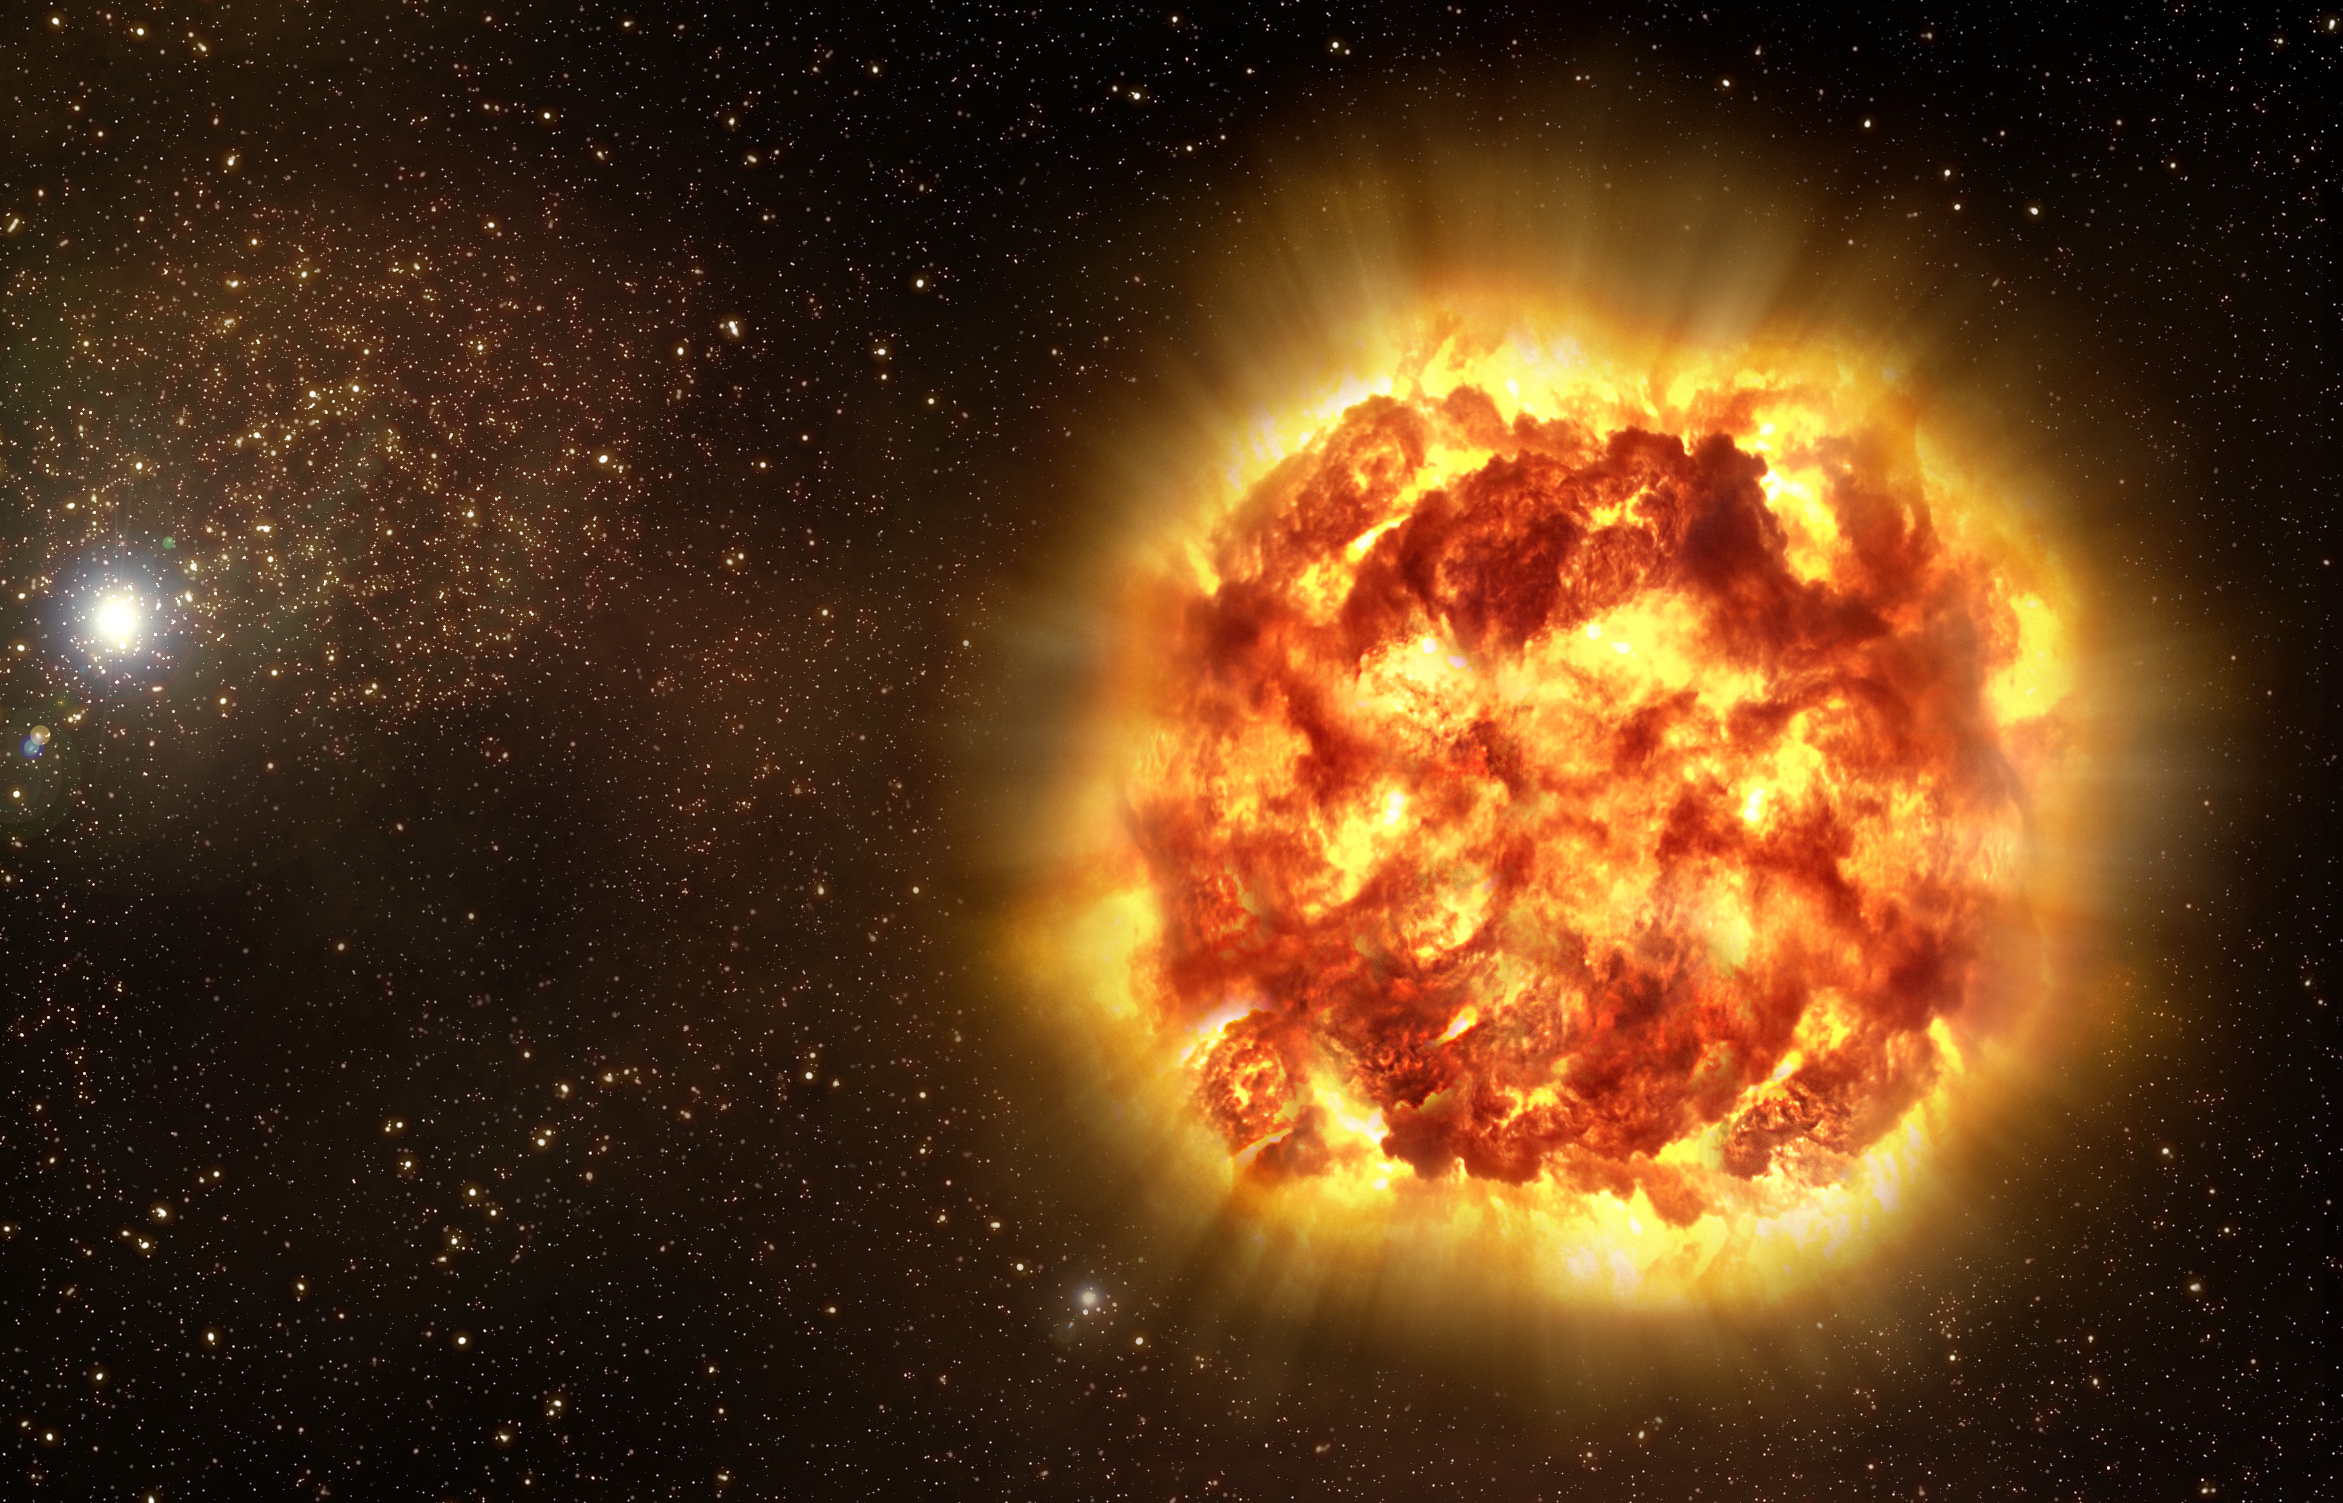 Supernova (Source: Wikimedia)